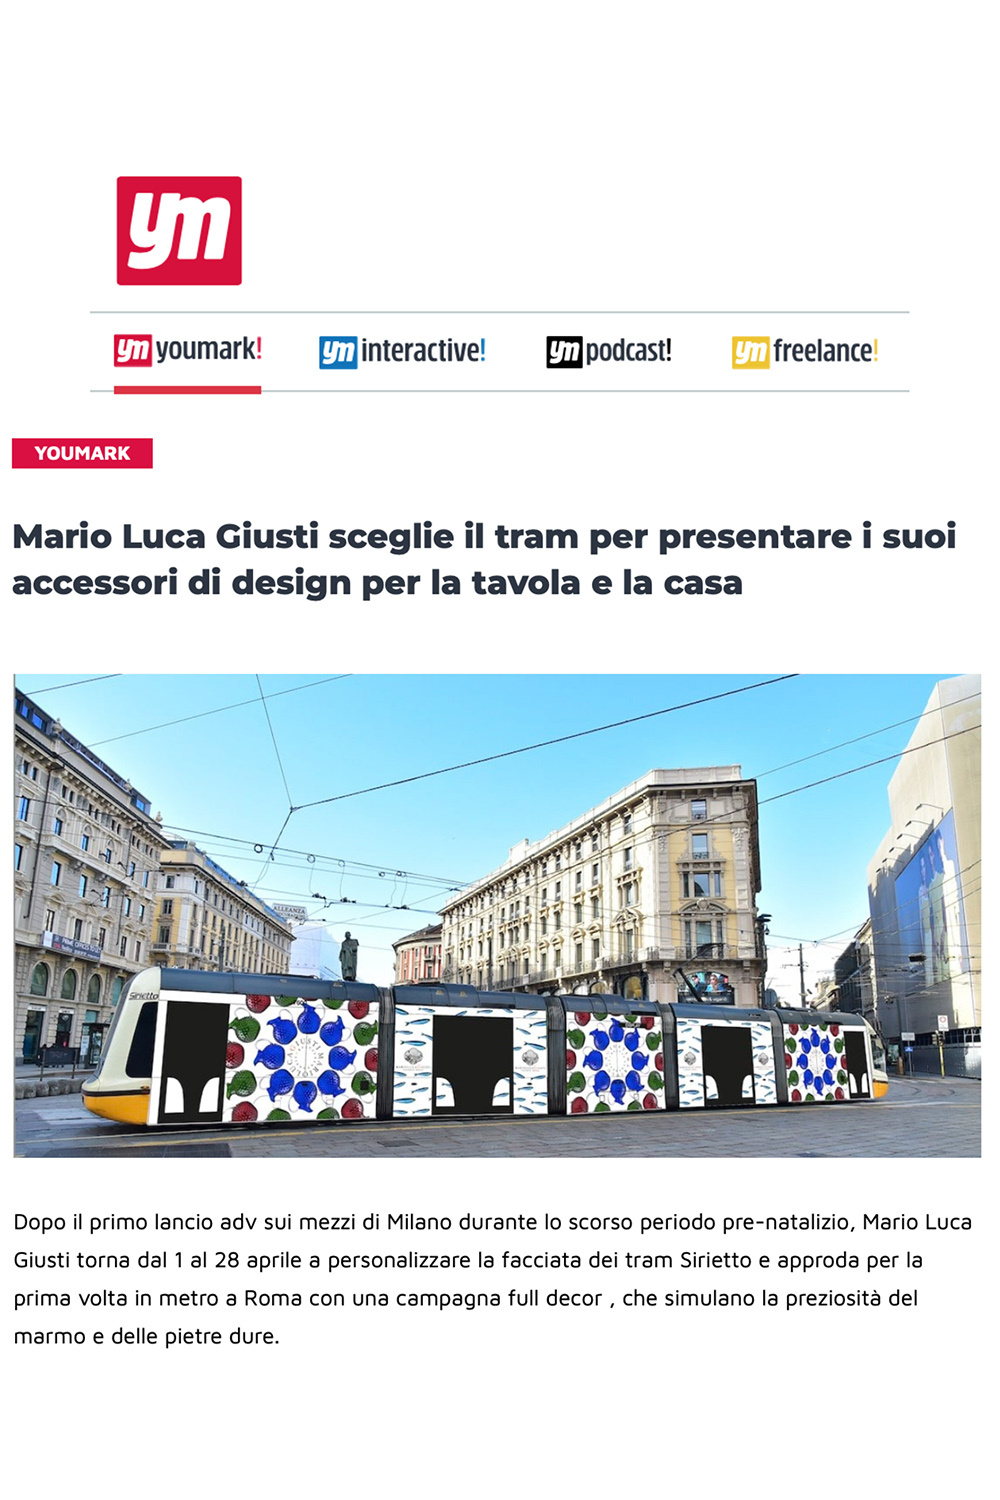 Mario Luca Giusti Sceglie Il Tram Per Presentare i Suoi Accessori Di Design Per La Tavola e La Casa 